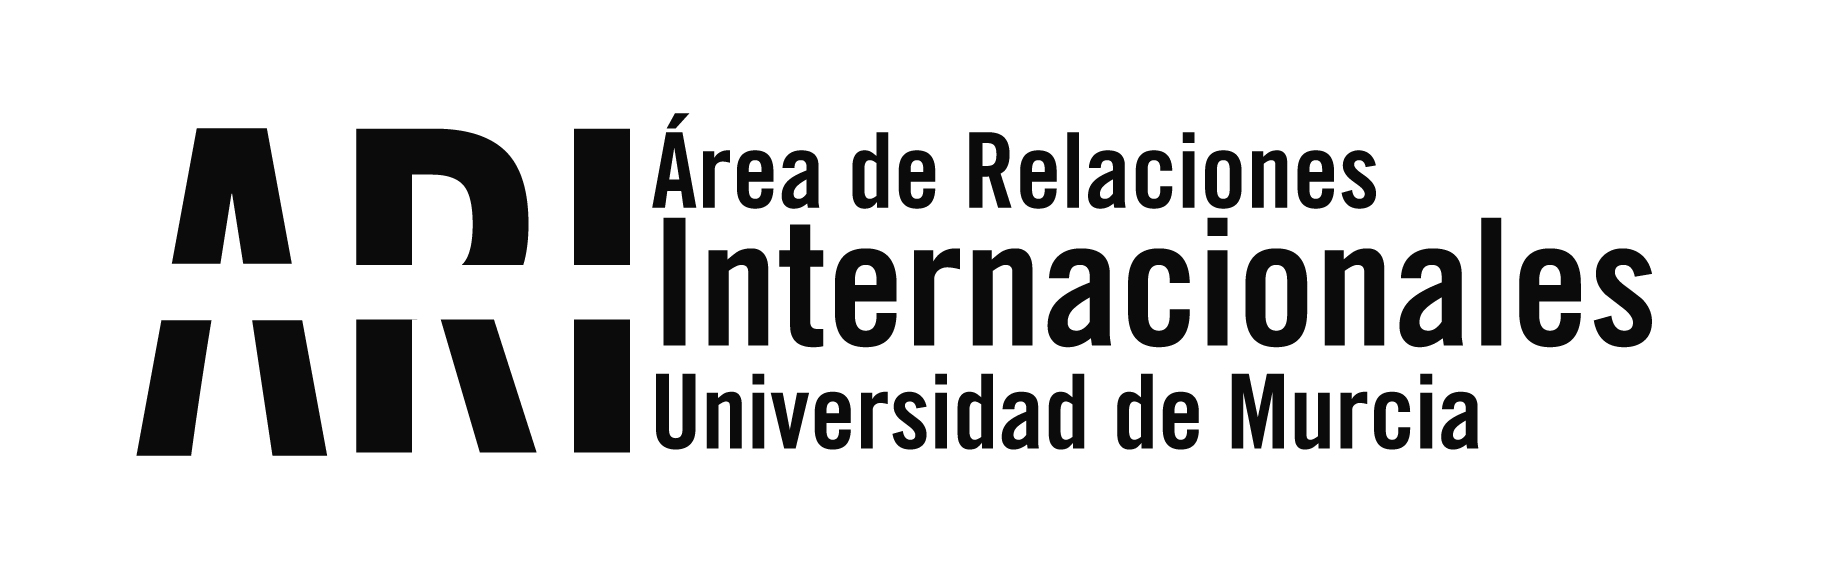 El proyecto Erasmus+ "Pro-Human Biolaw" coordinado por la UMU celebra en Costa Rica el I Congreso Iberoamericano de Bioderecho - Área de Relaciones Internacionales